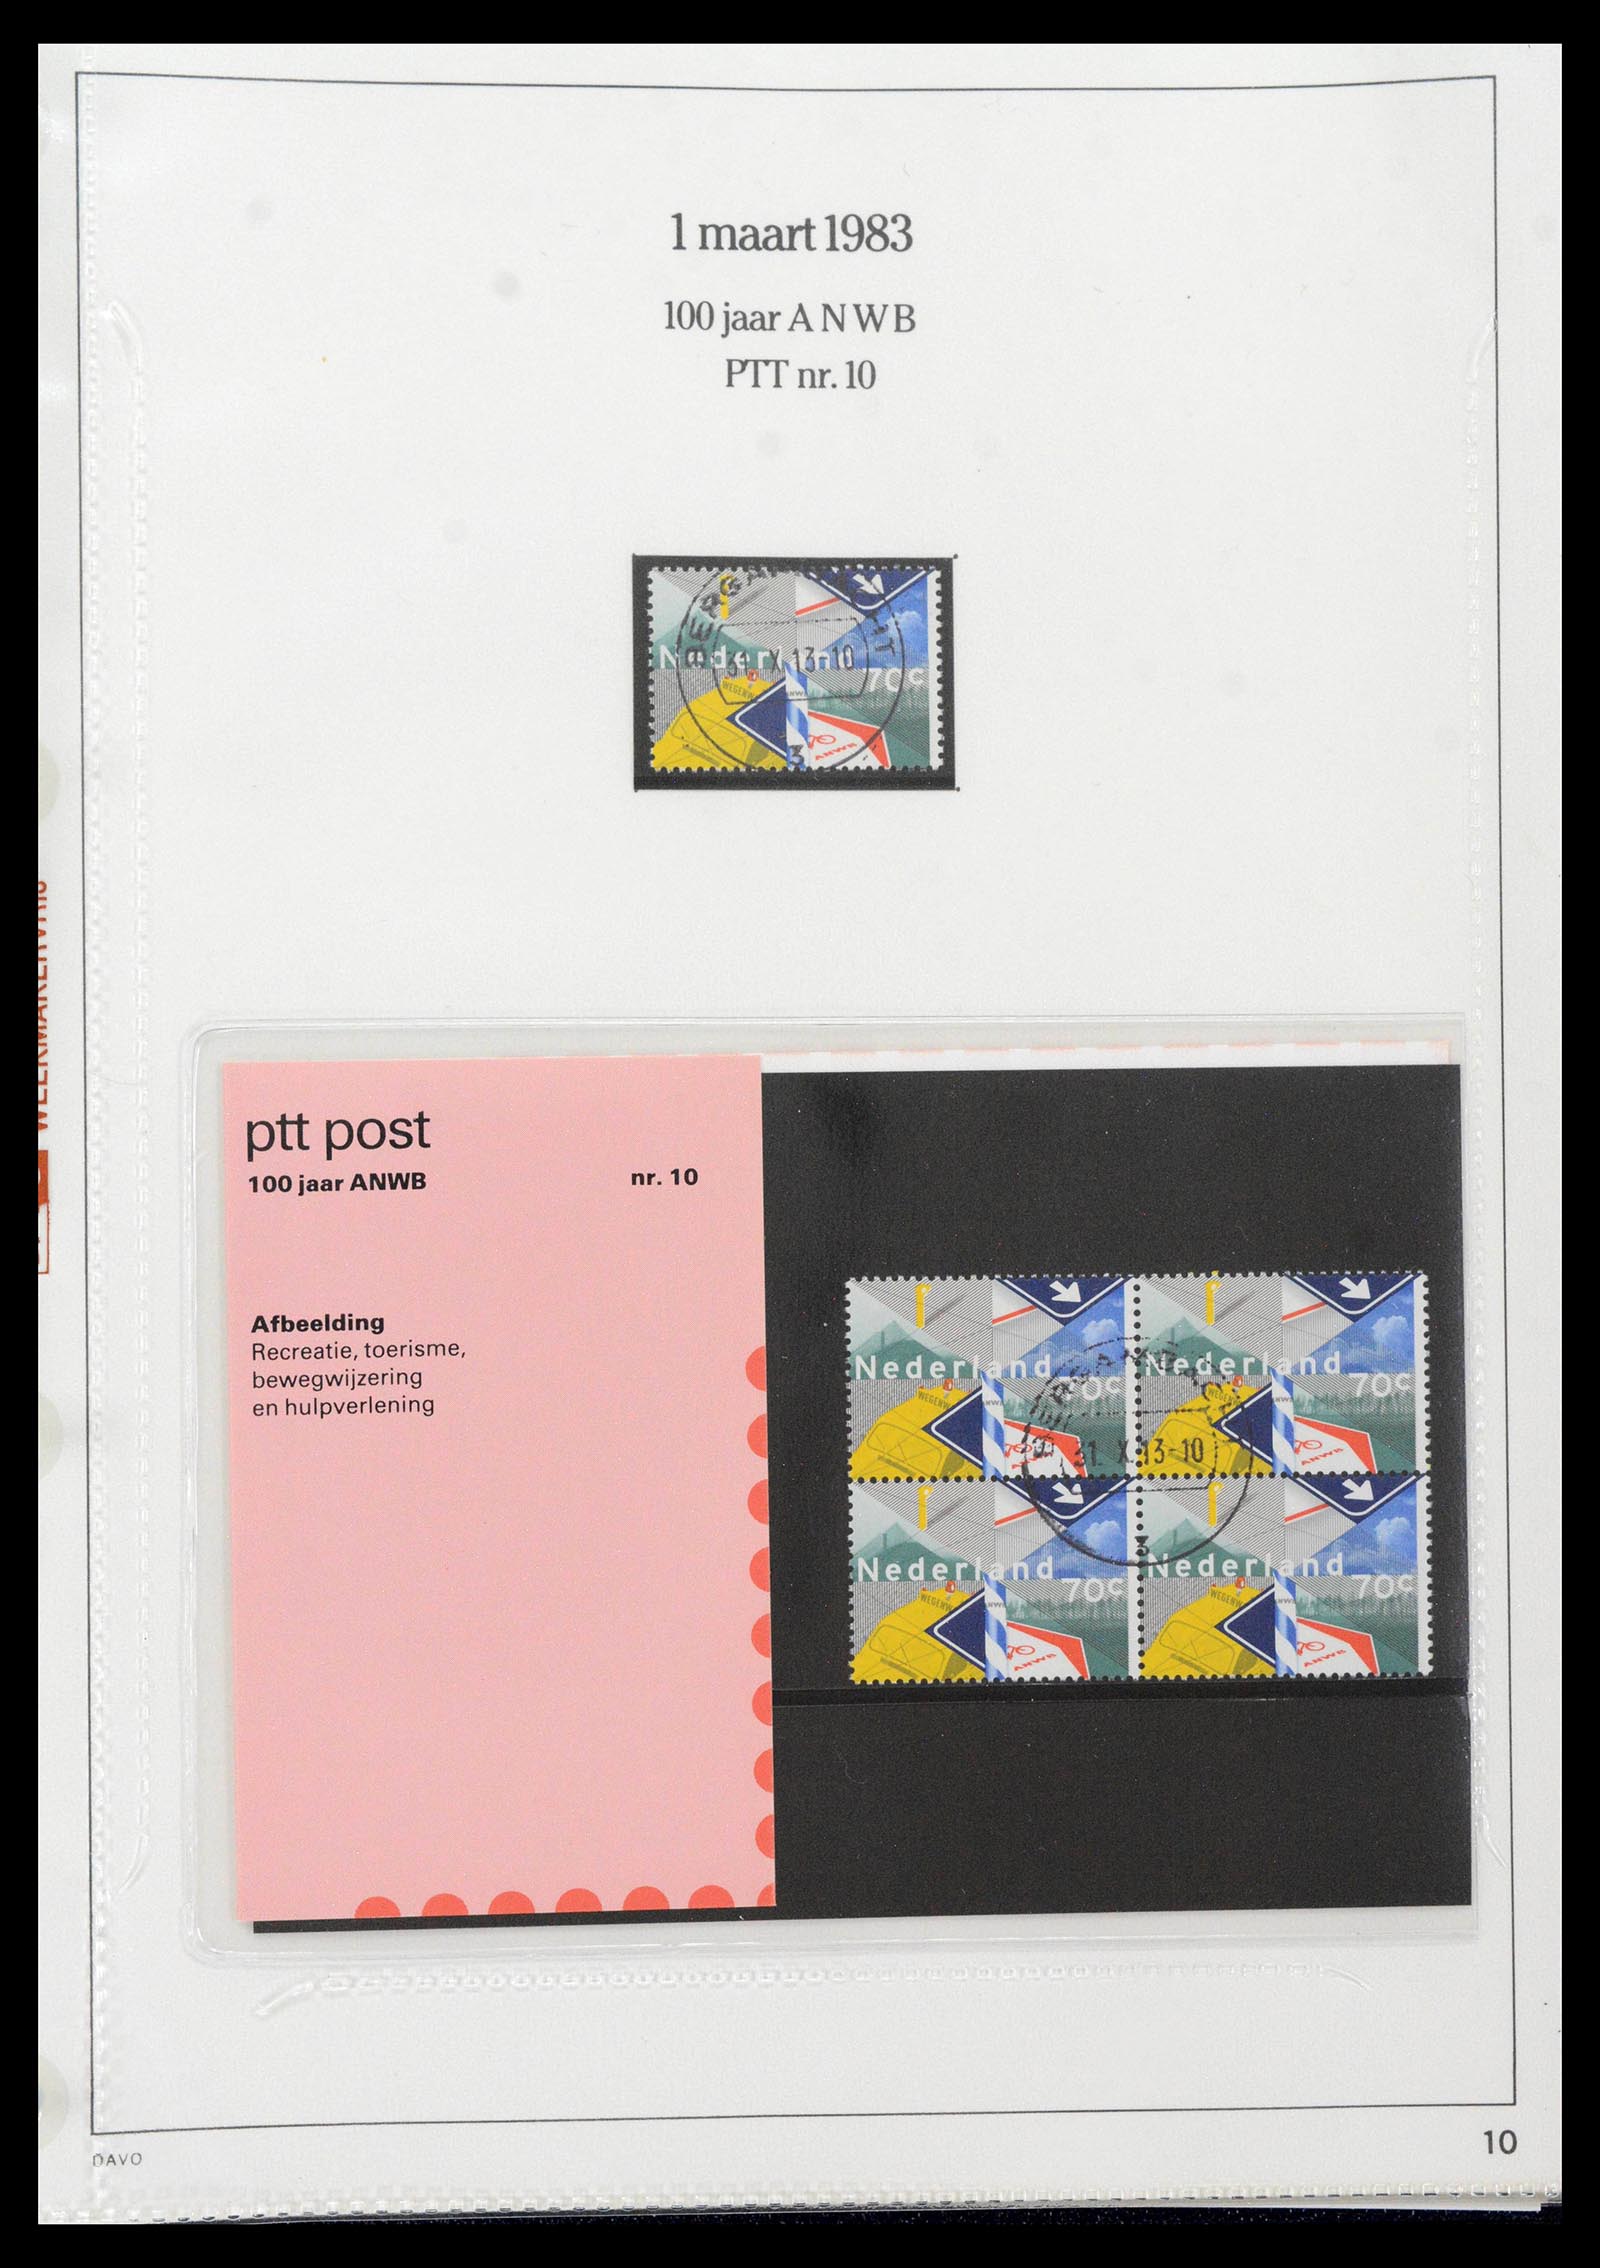 39121 0010 - Stamp collection 39121 Netherlands presentationpacks 1982-2001.